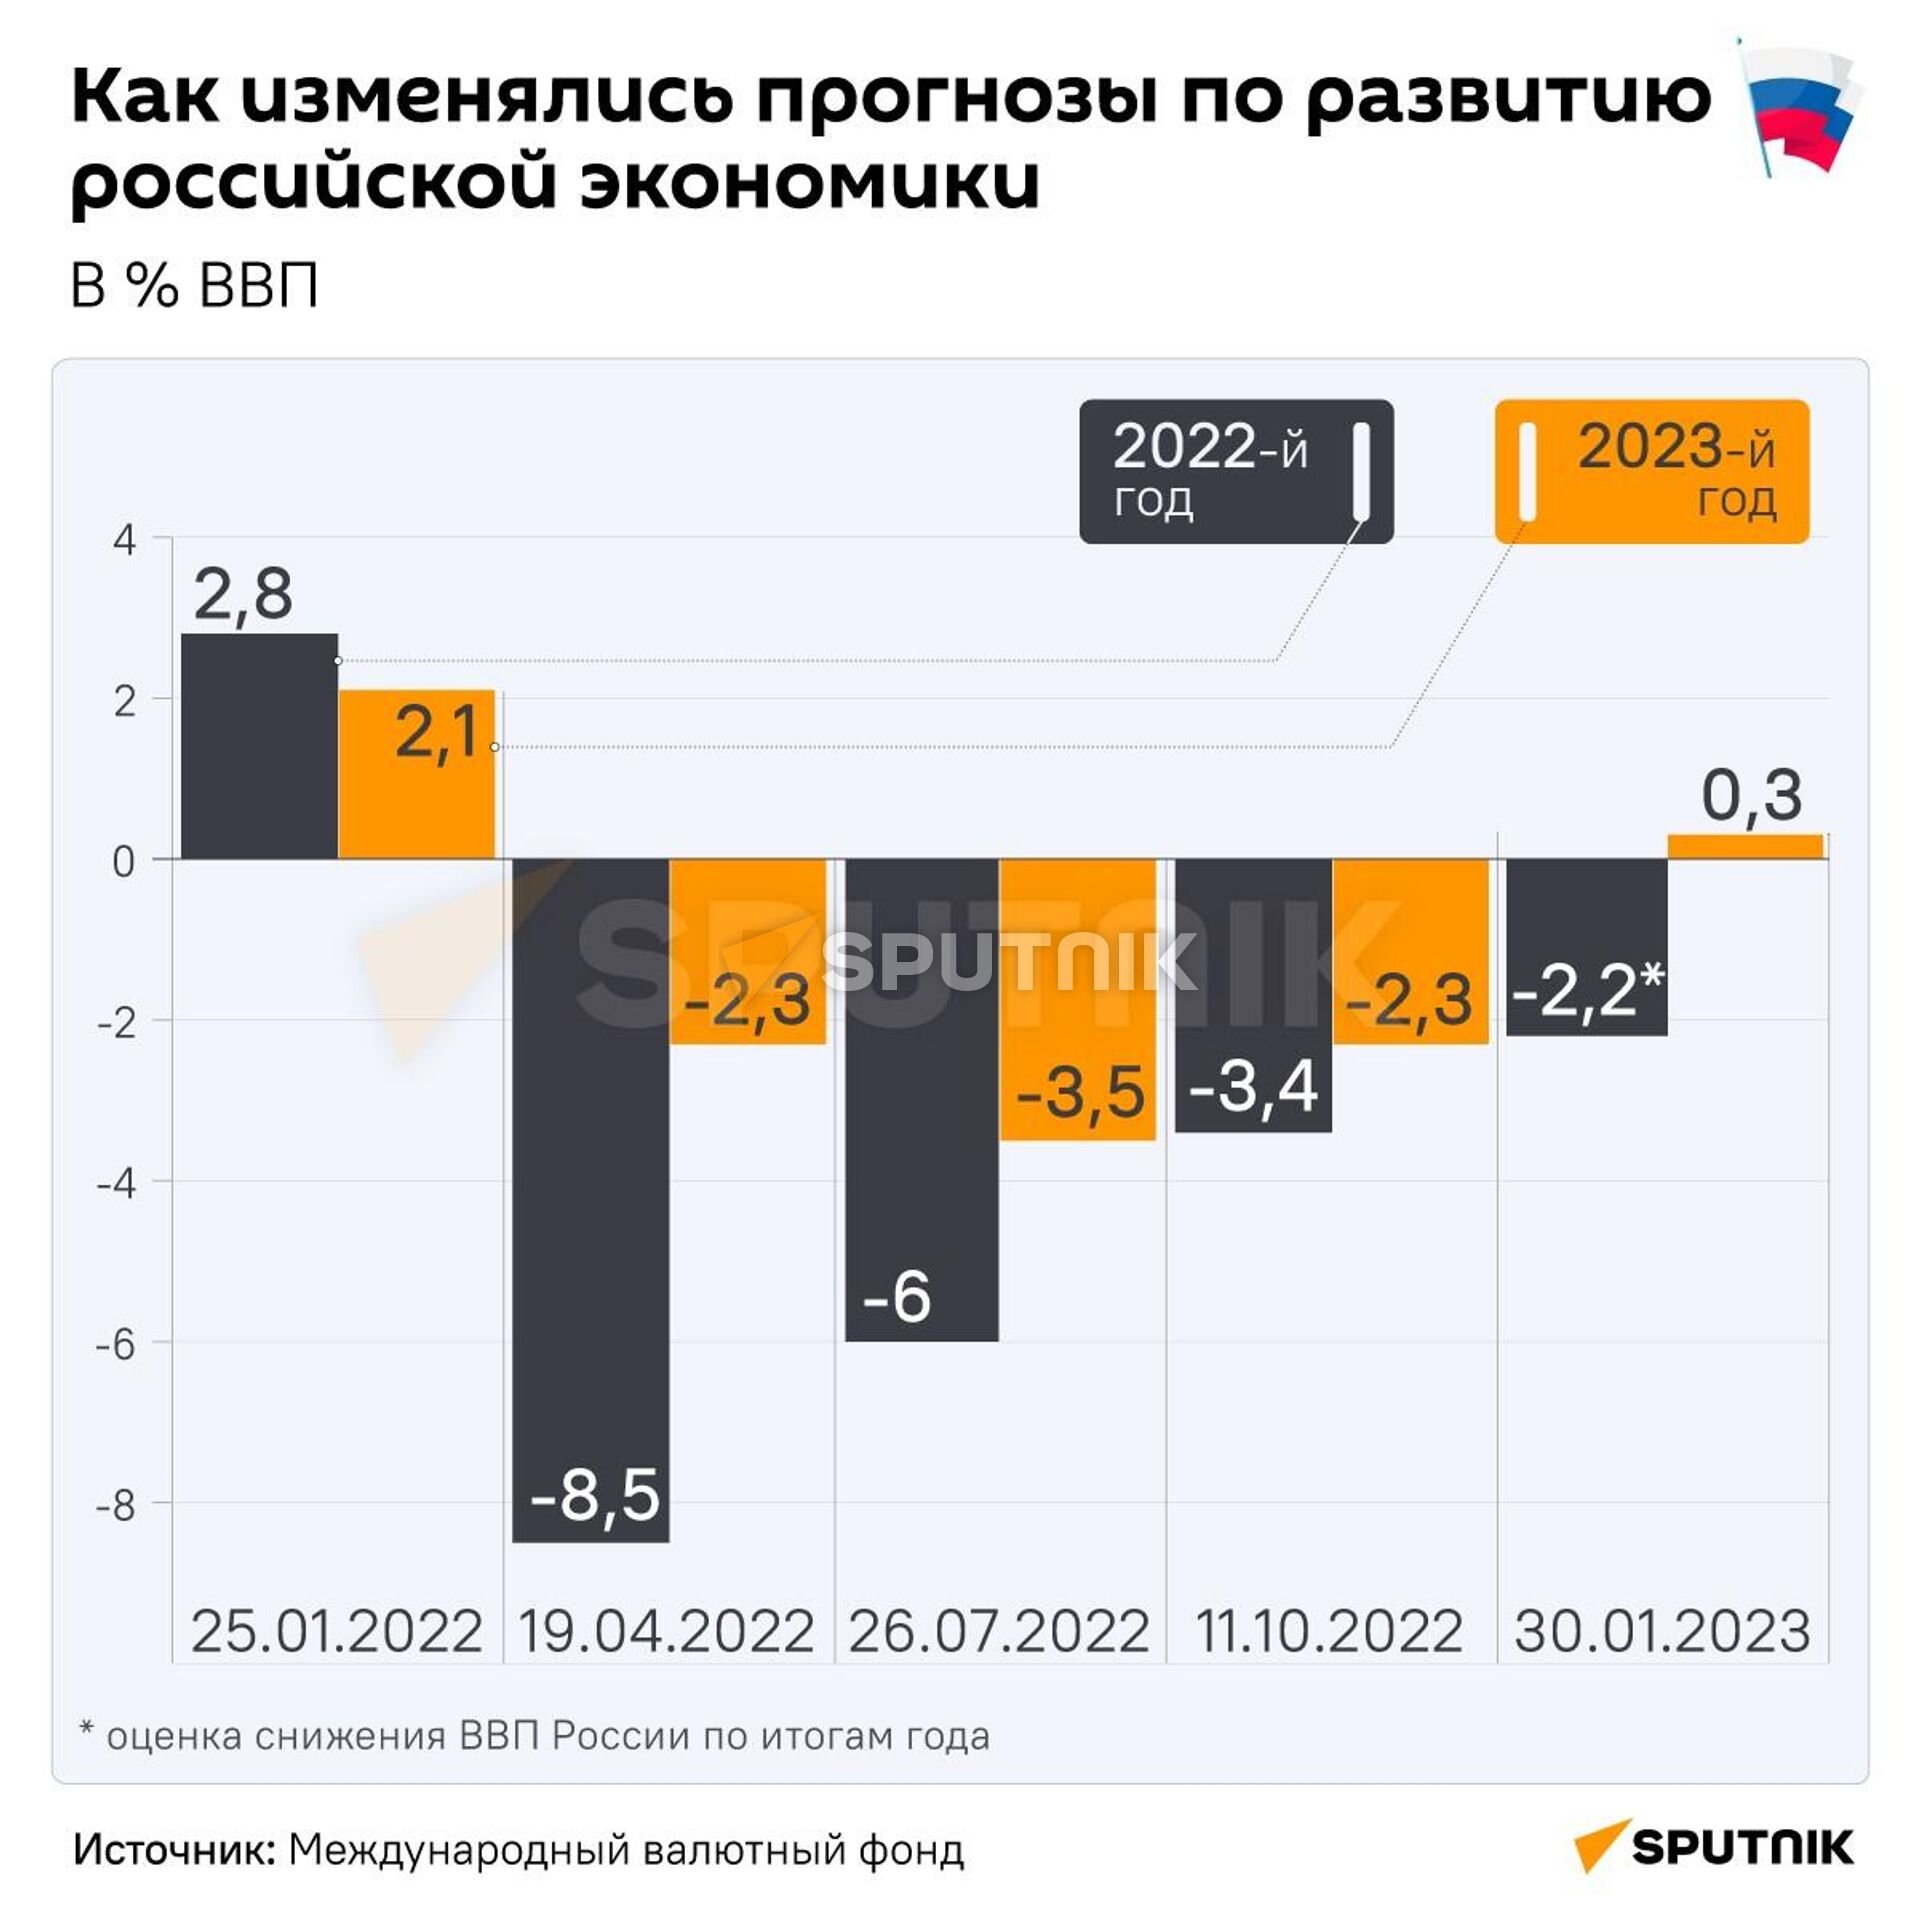 Как изменялись прогнозы по развитию российской экономики - Sputnik Латвия, 1920, 23.02.2023